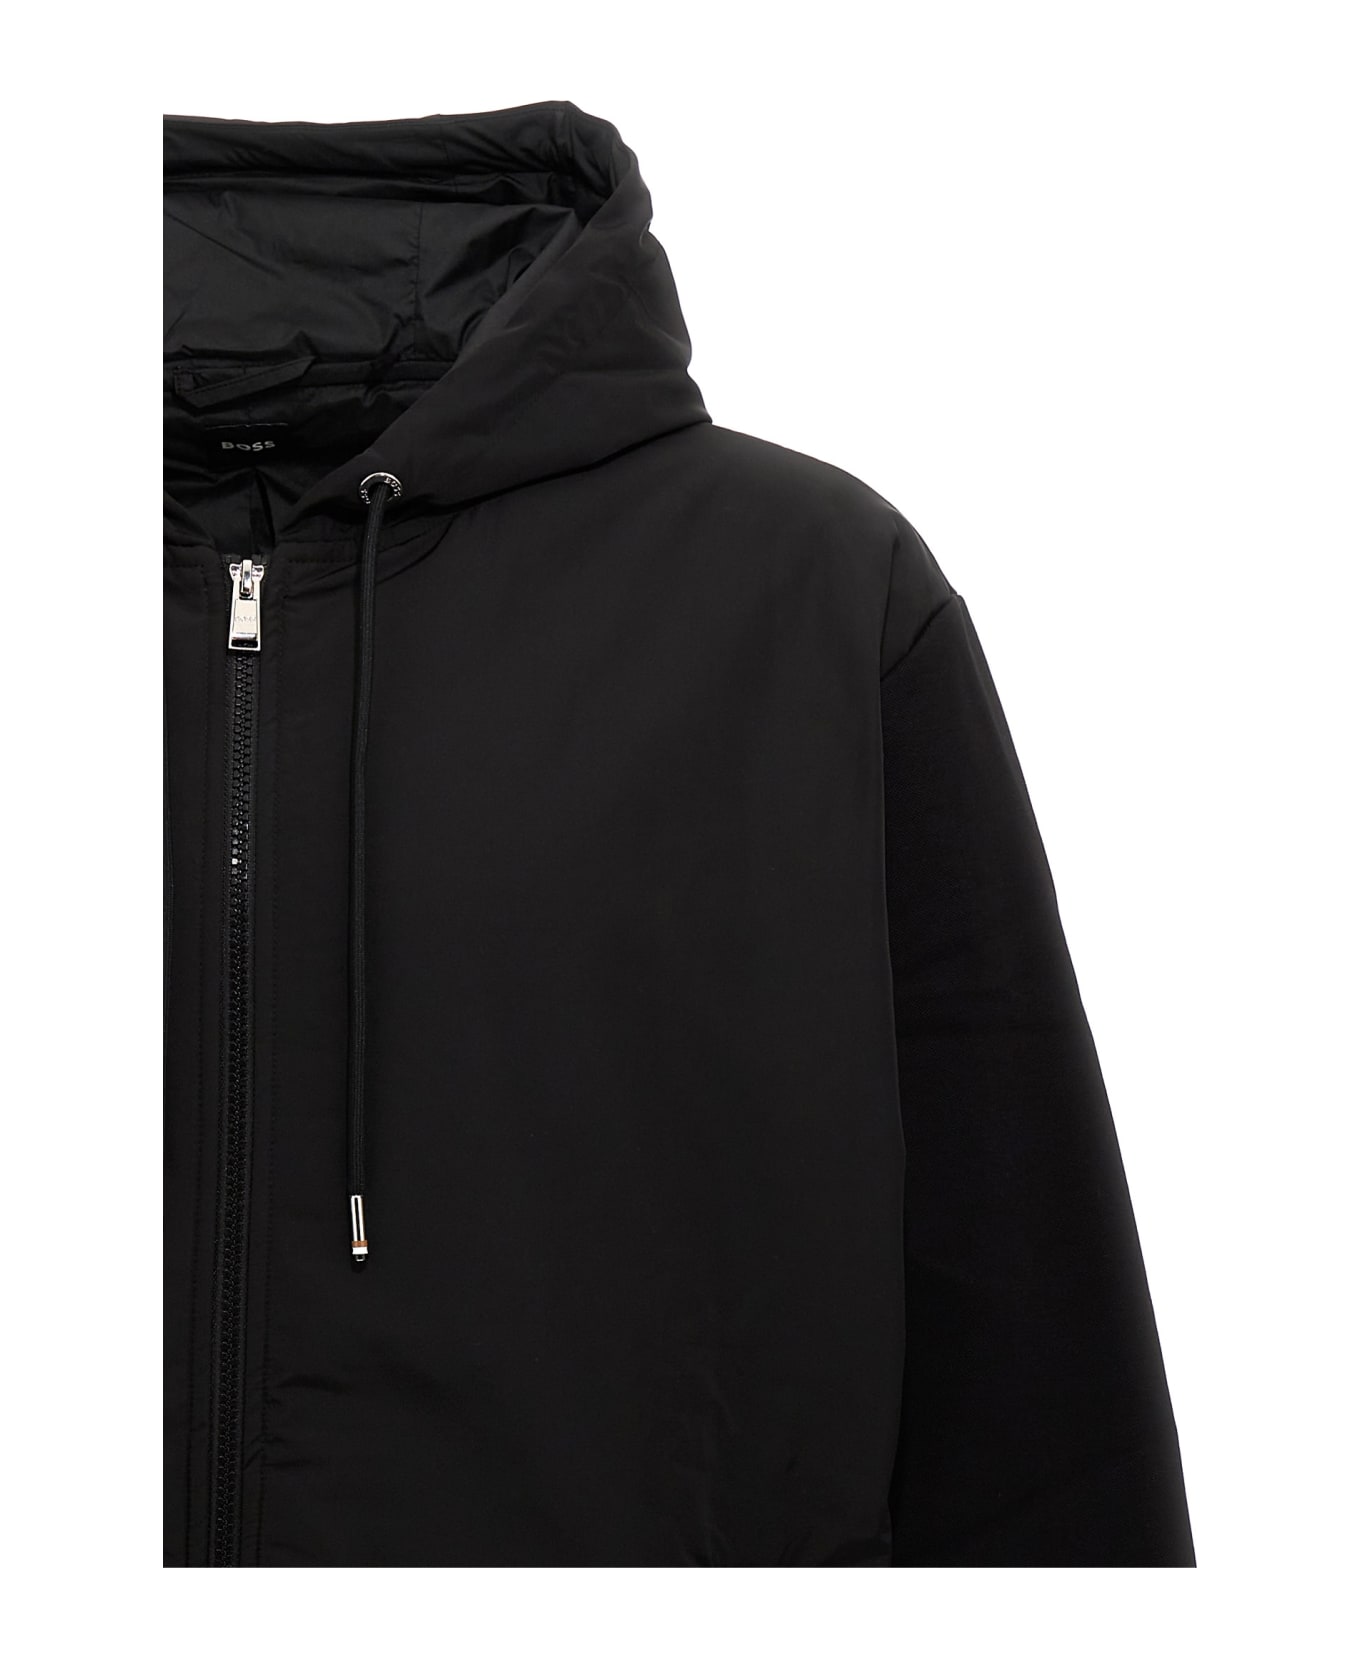 Hugo Boss 'sommers 66' Hooded Jacket - Black  